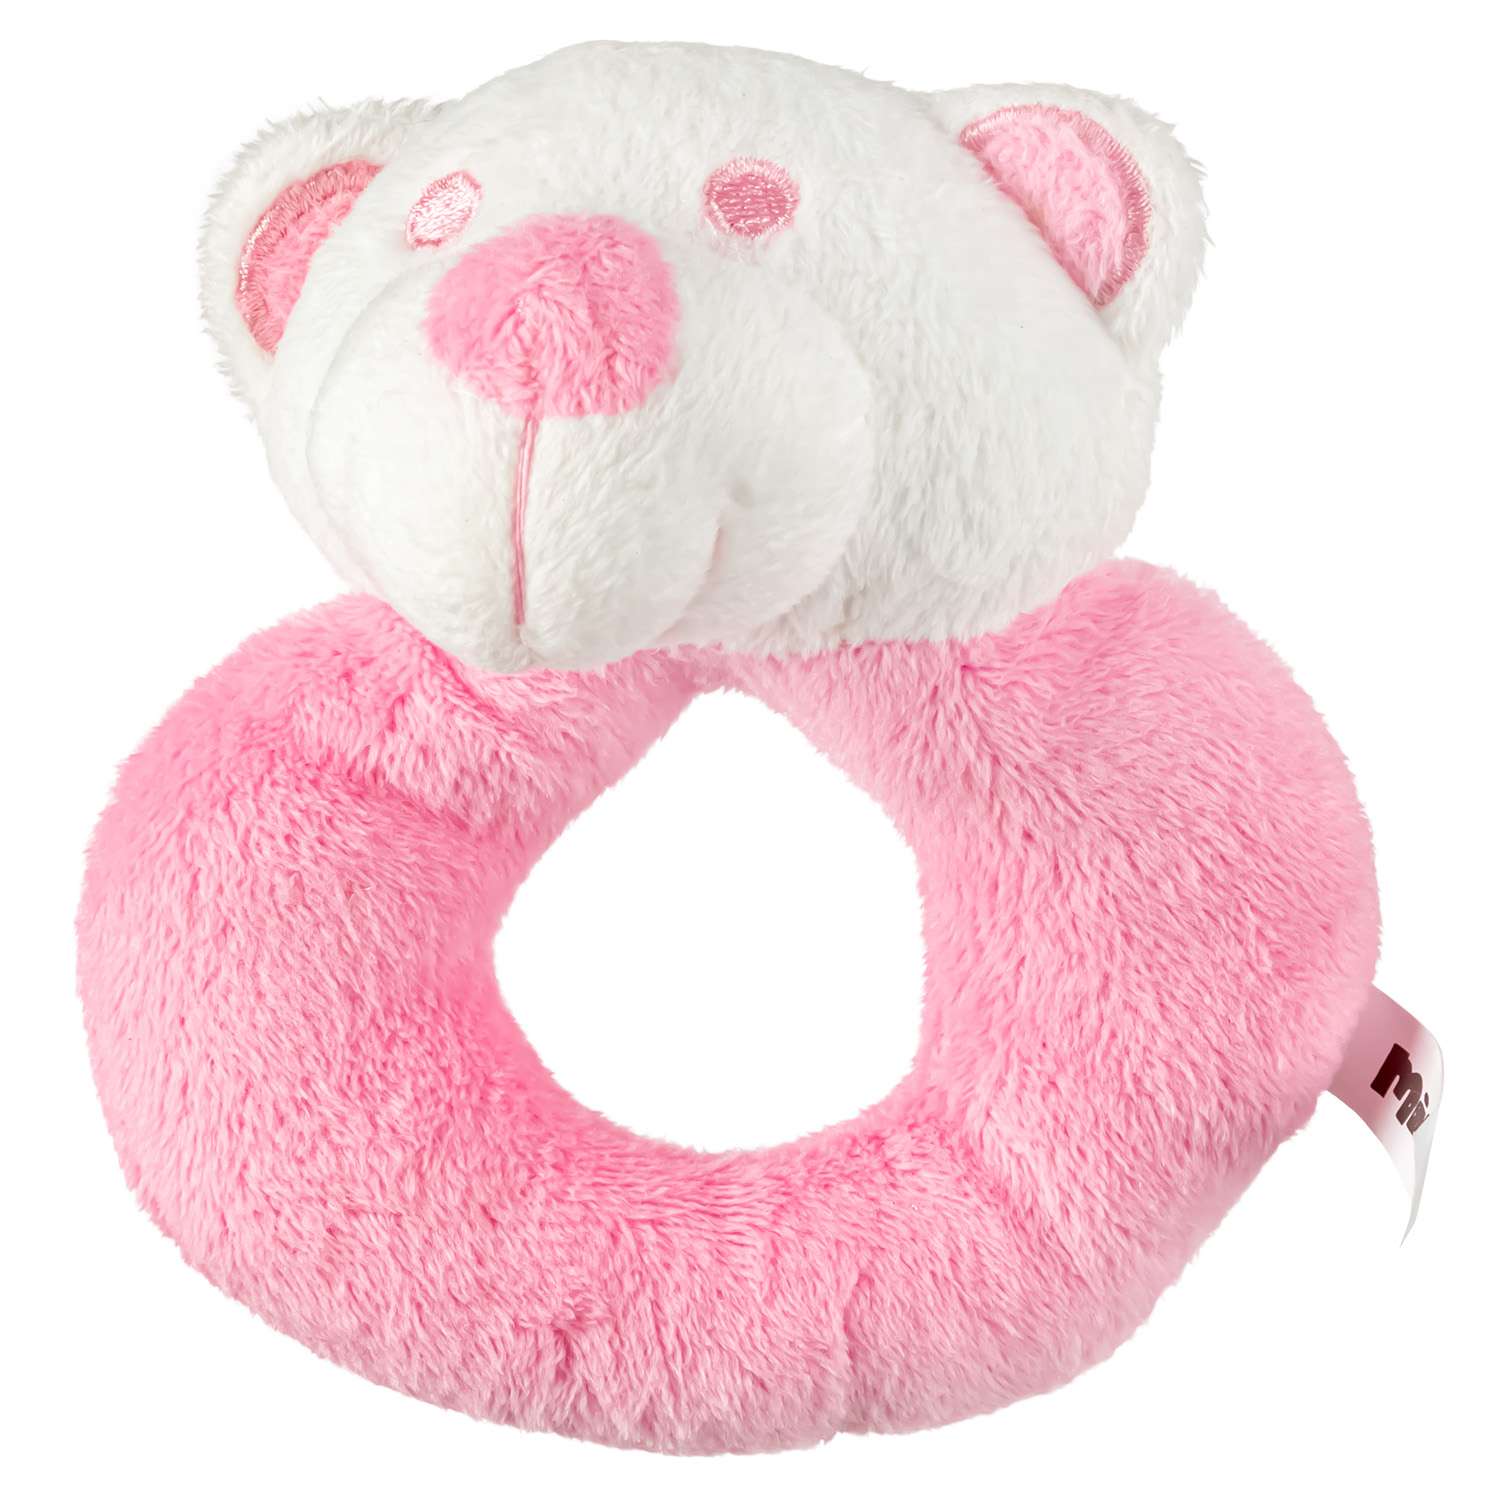 Погремушка Mioshi милый медвежонок 12 см розовый - фото 1